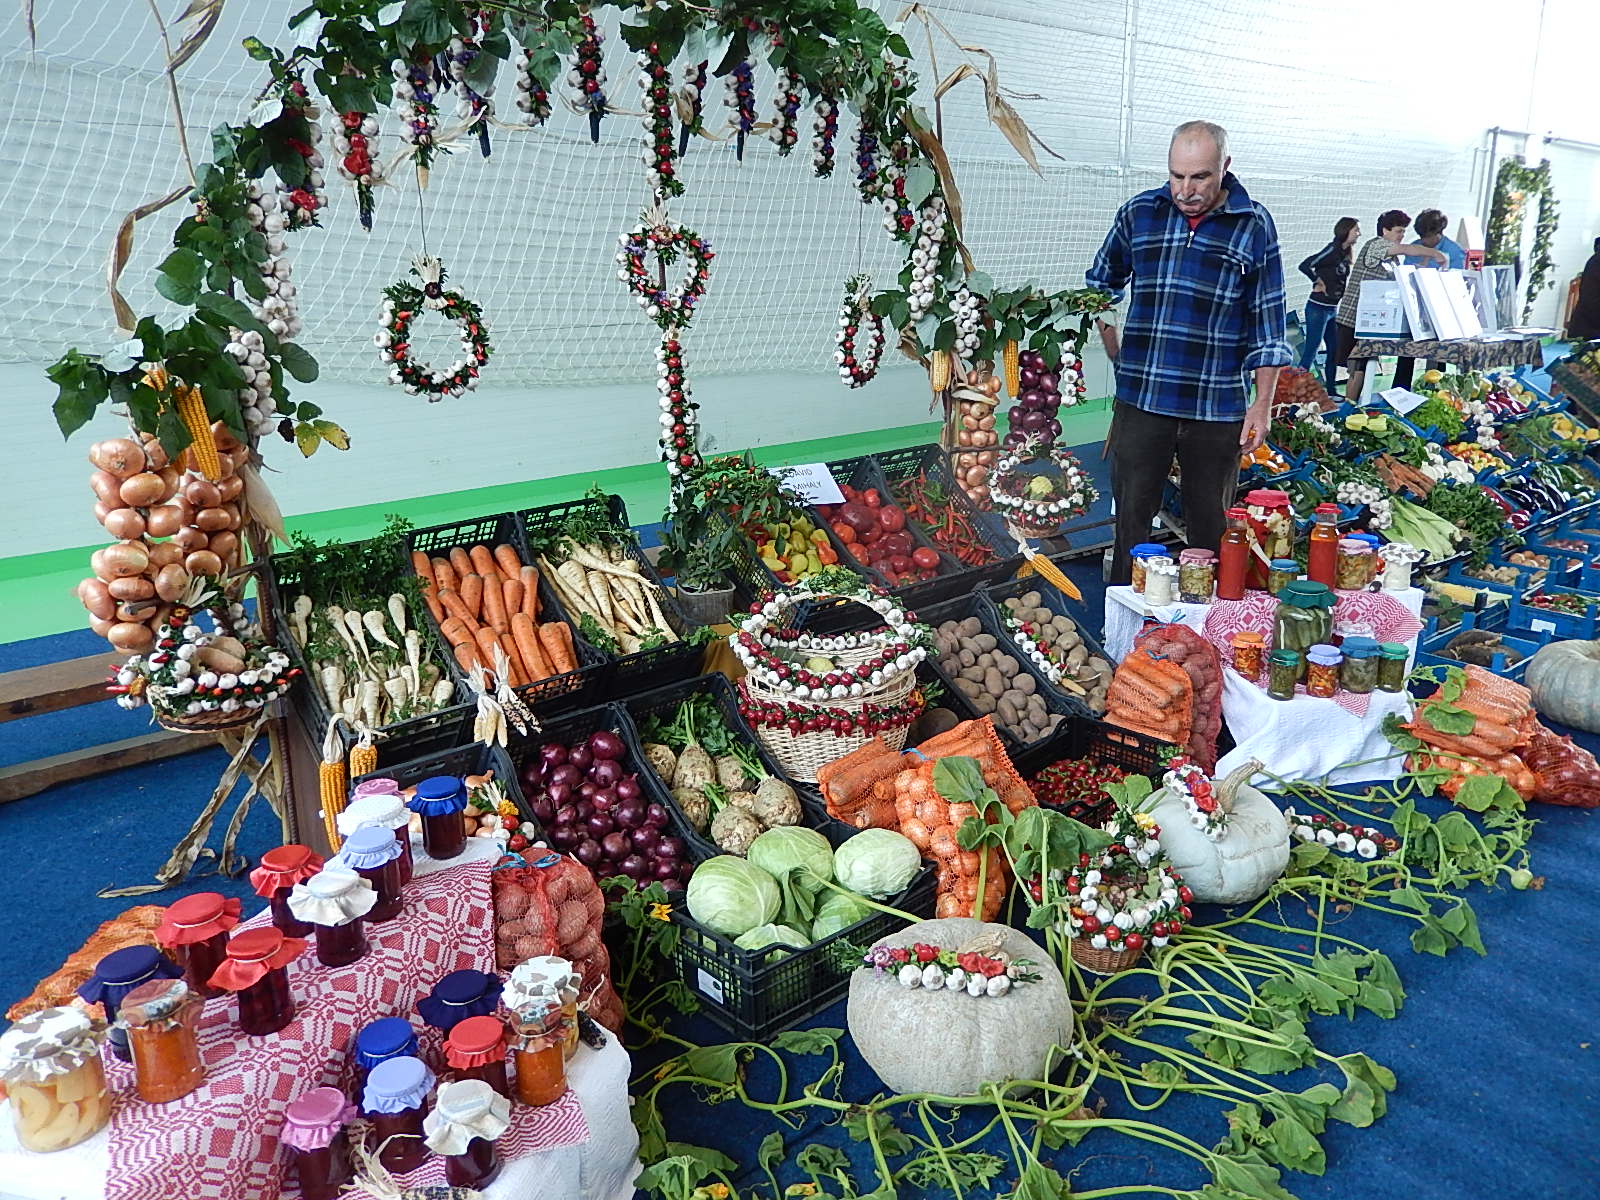 Expoziţia de legume - Zöldségkiállítás - Vegetable exposition